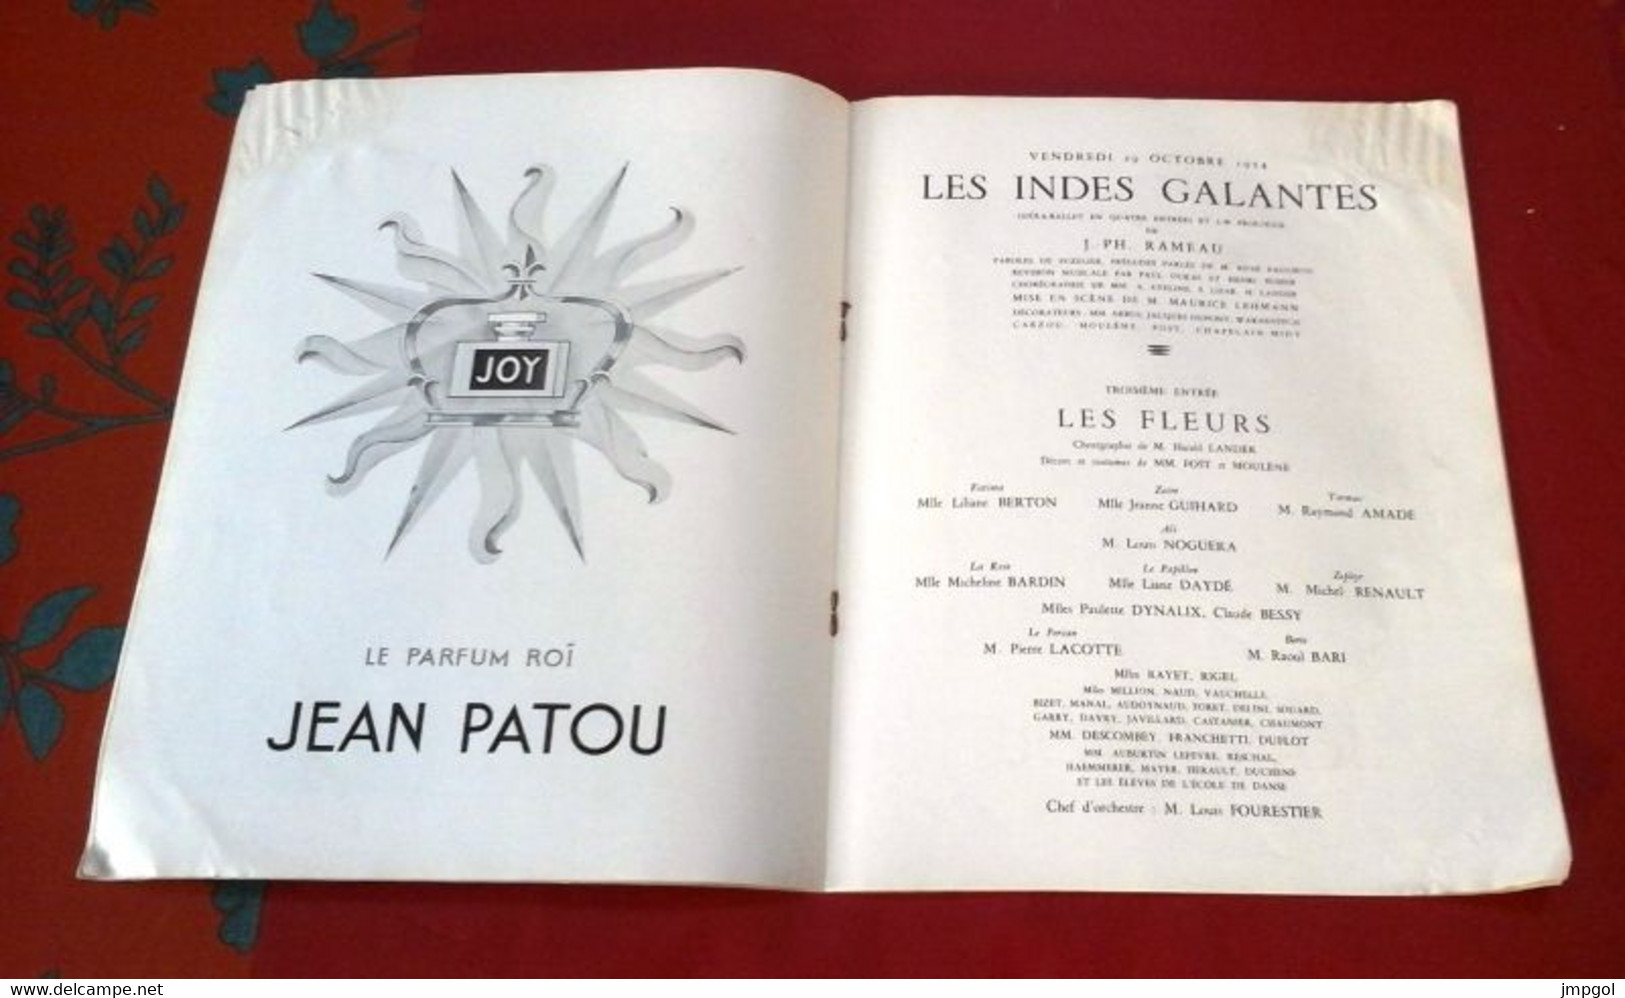 Théâtre National De L'Opéra 1954 En Honneur Empereur Ethiopie Les Indes Galantes Rameau Etudes Riisager - Programmes